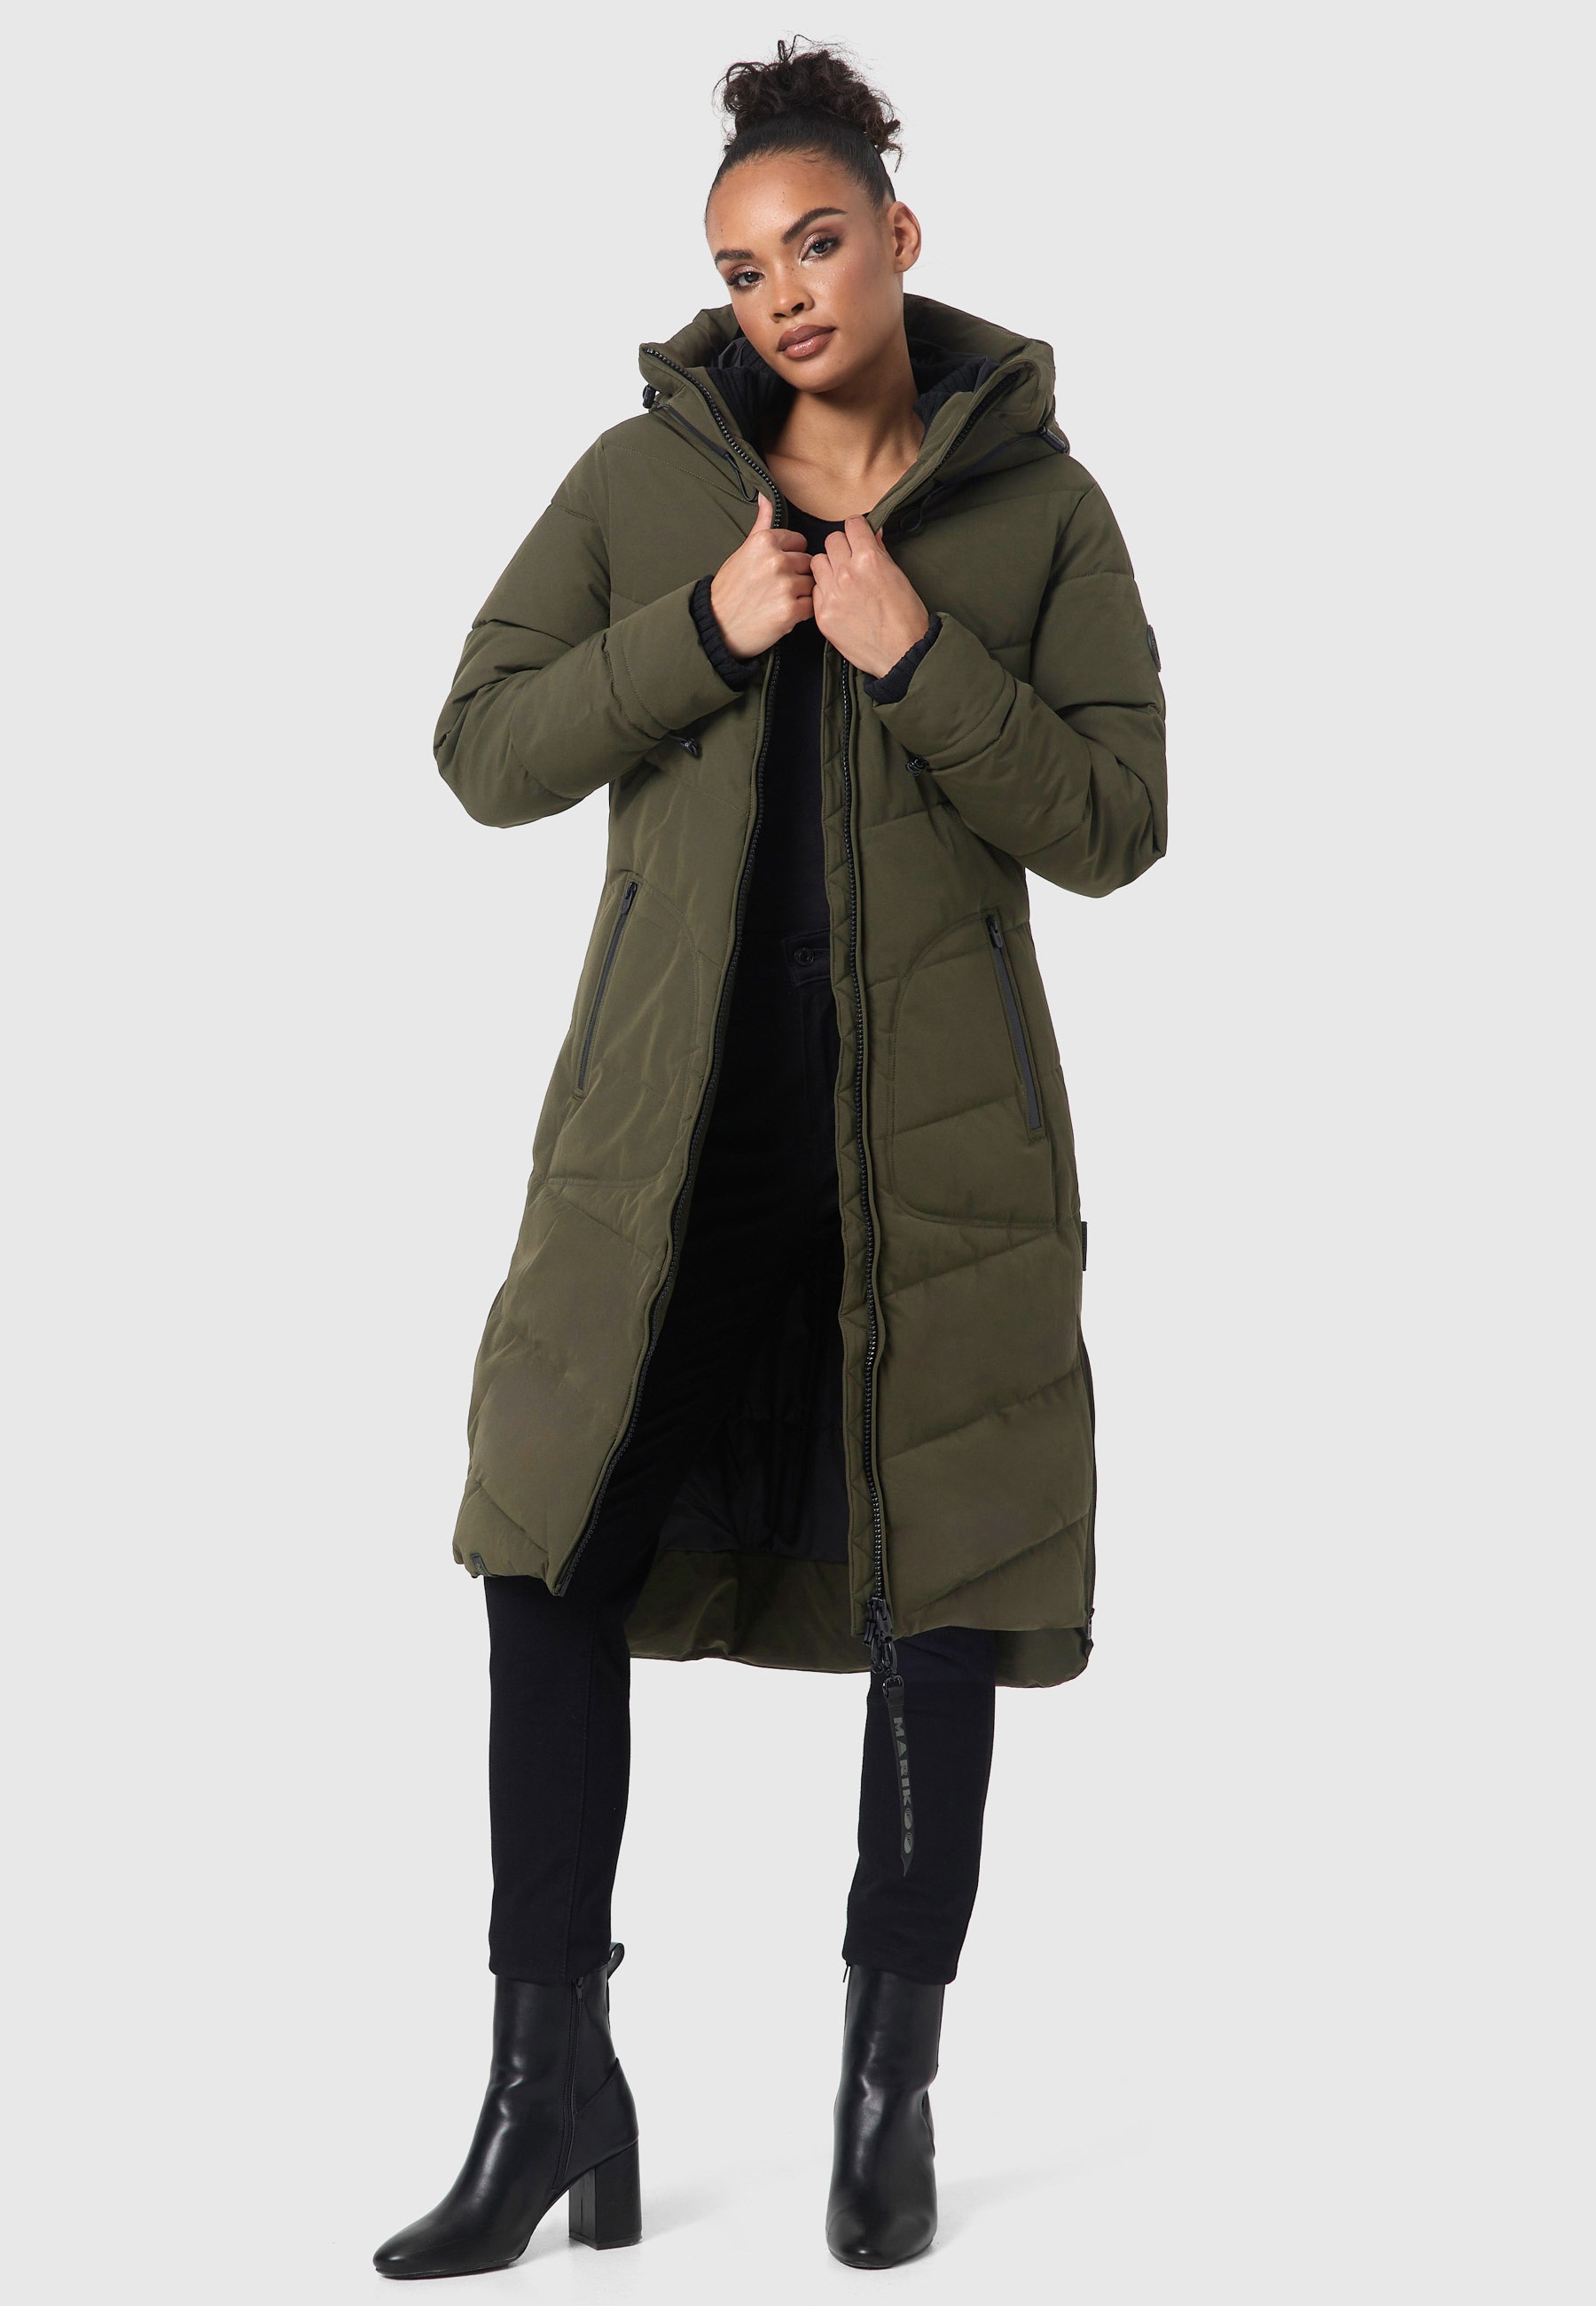 Mantel für gesteppt kaufen »Benikoo«, Winterjacke Winter BAUR | langer Marikoo